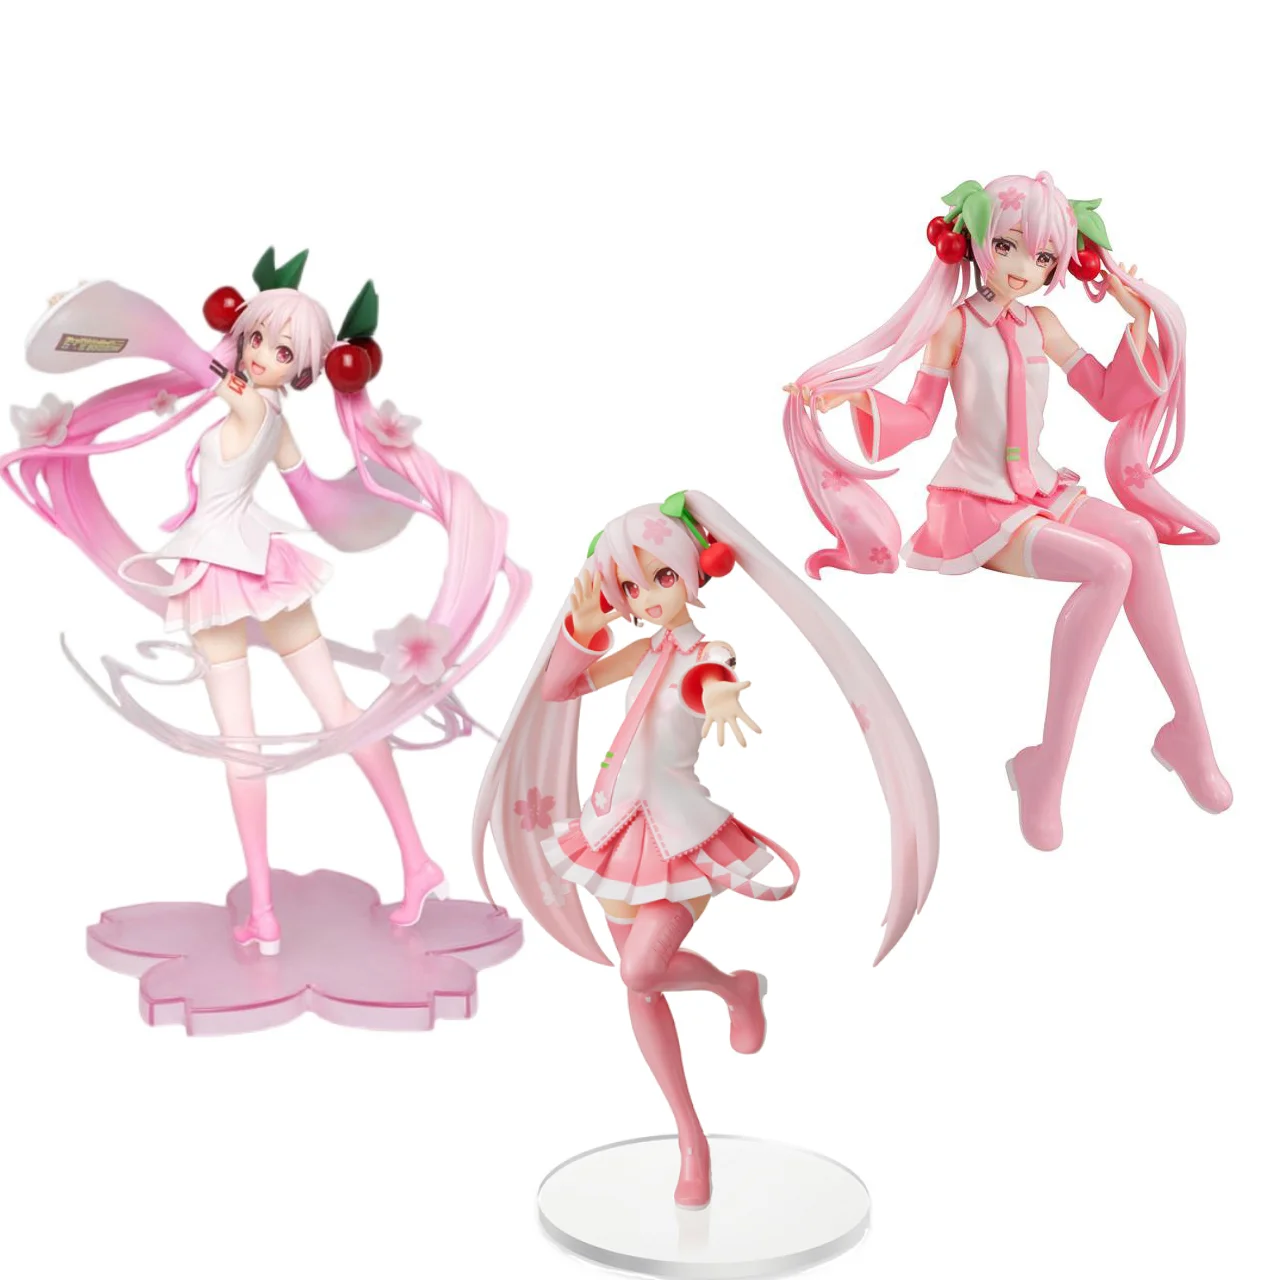 Judai Original Sega Taito Furyu VOCALOID Hatsune Miku Sakura Miku PVC Action Figure Model Doll Toys